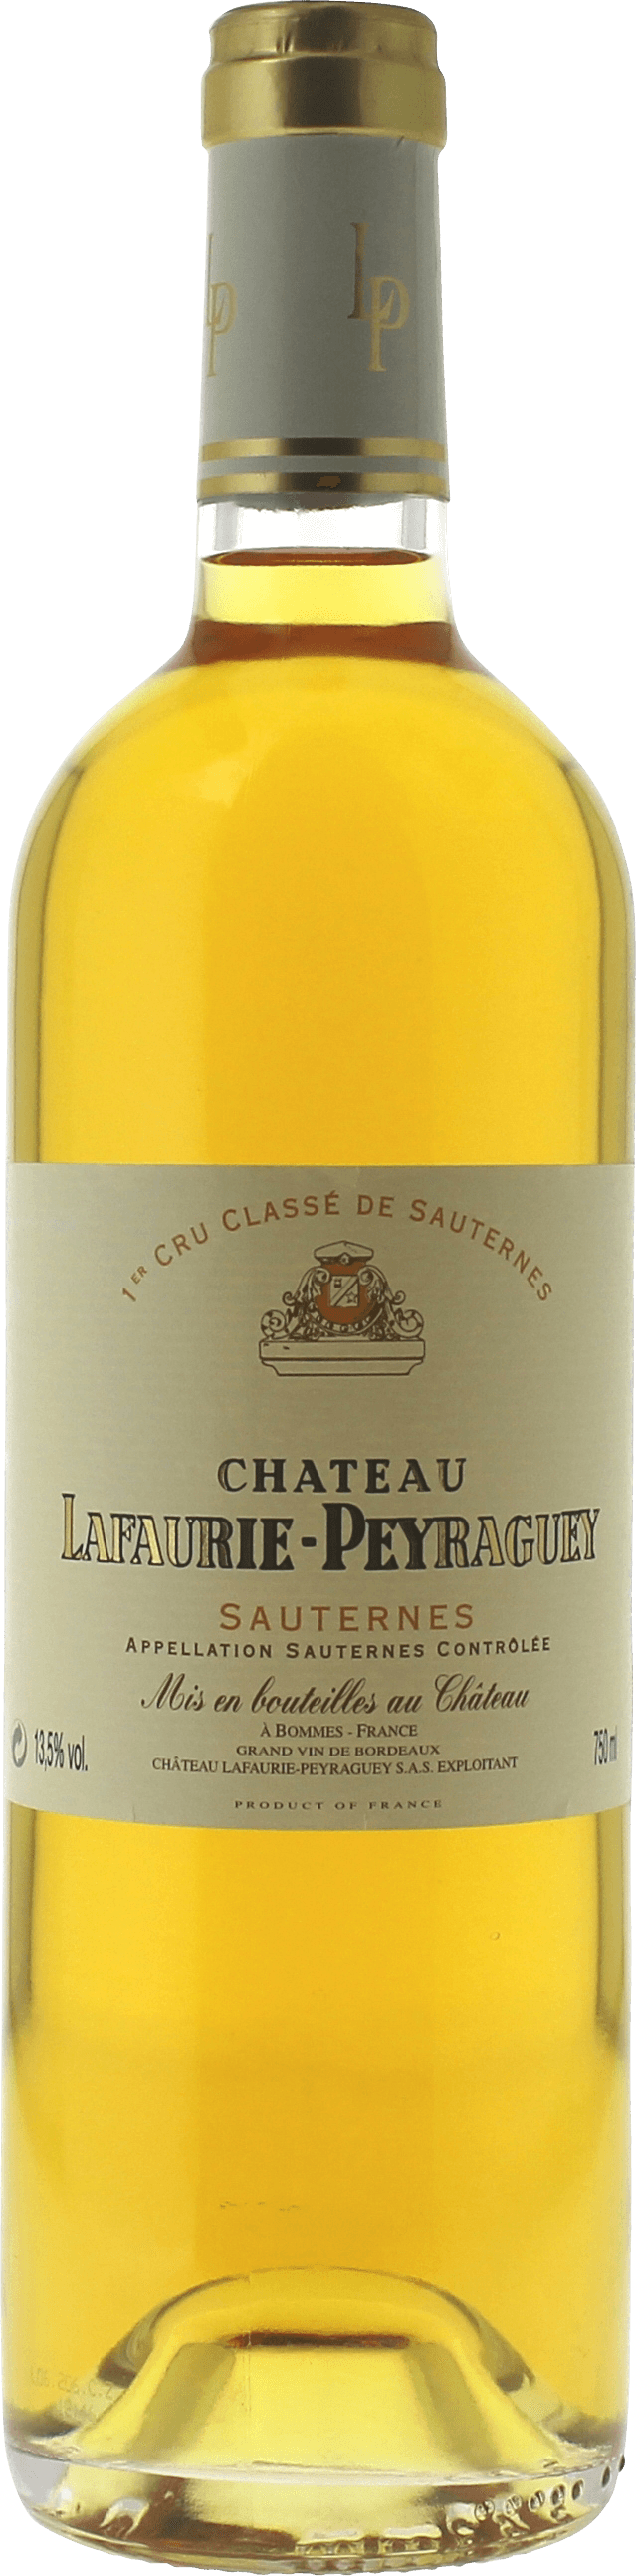 Lafaurie peyraguey 2001  Sauternes, Bordeaux blanc